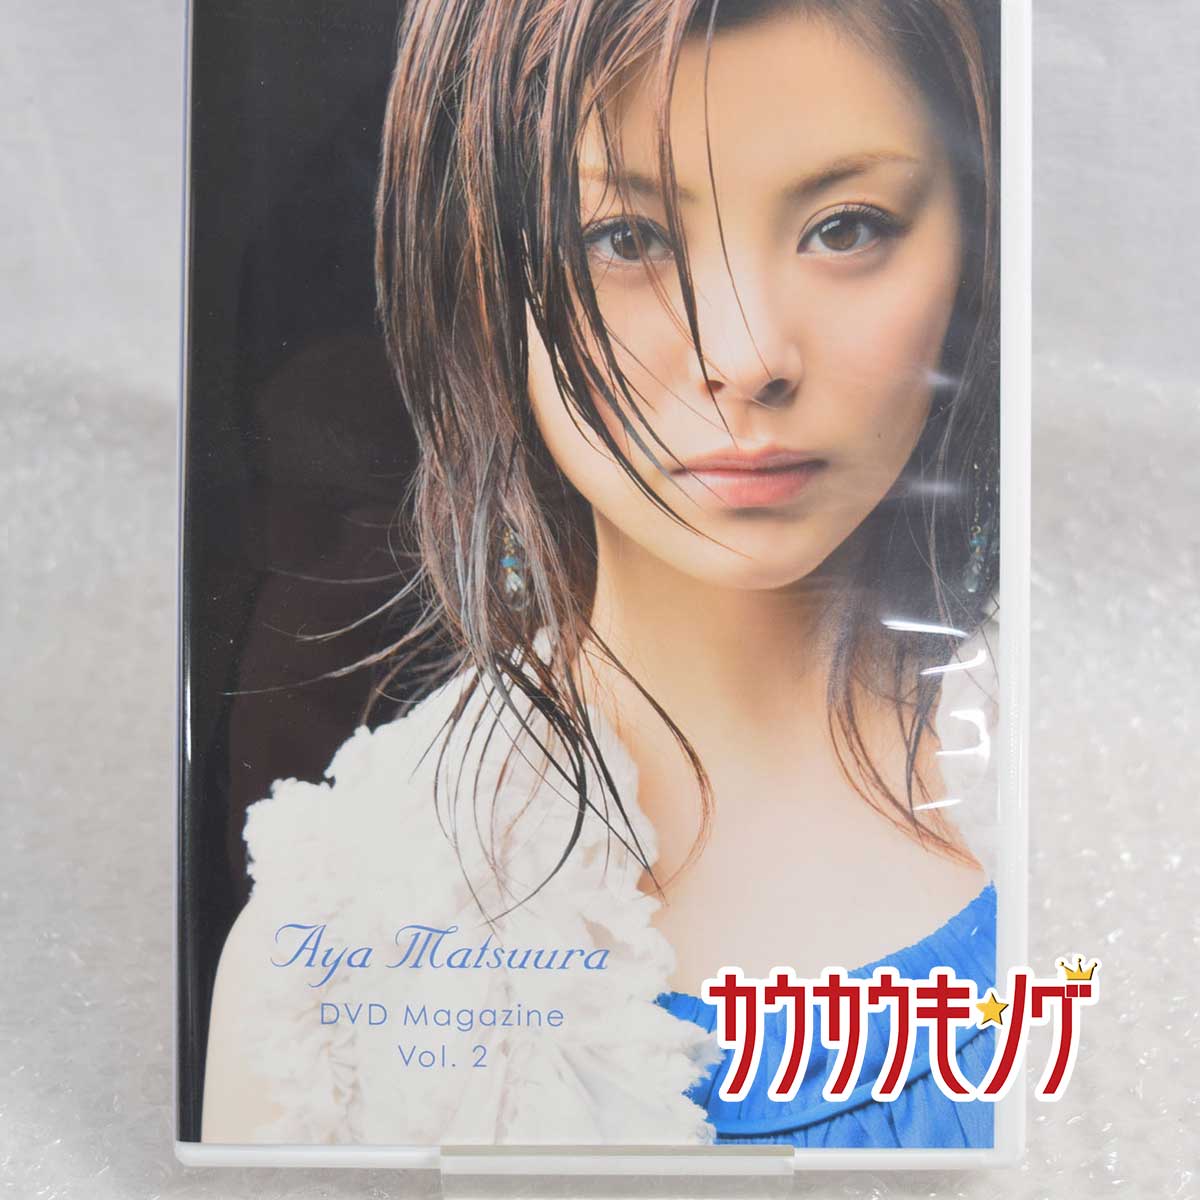 【中古】DVD「松浦亜弥 DVD MAGAZINE Vol.2」DVDマガジン ハロプロ